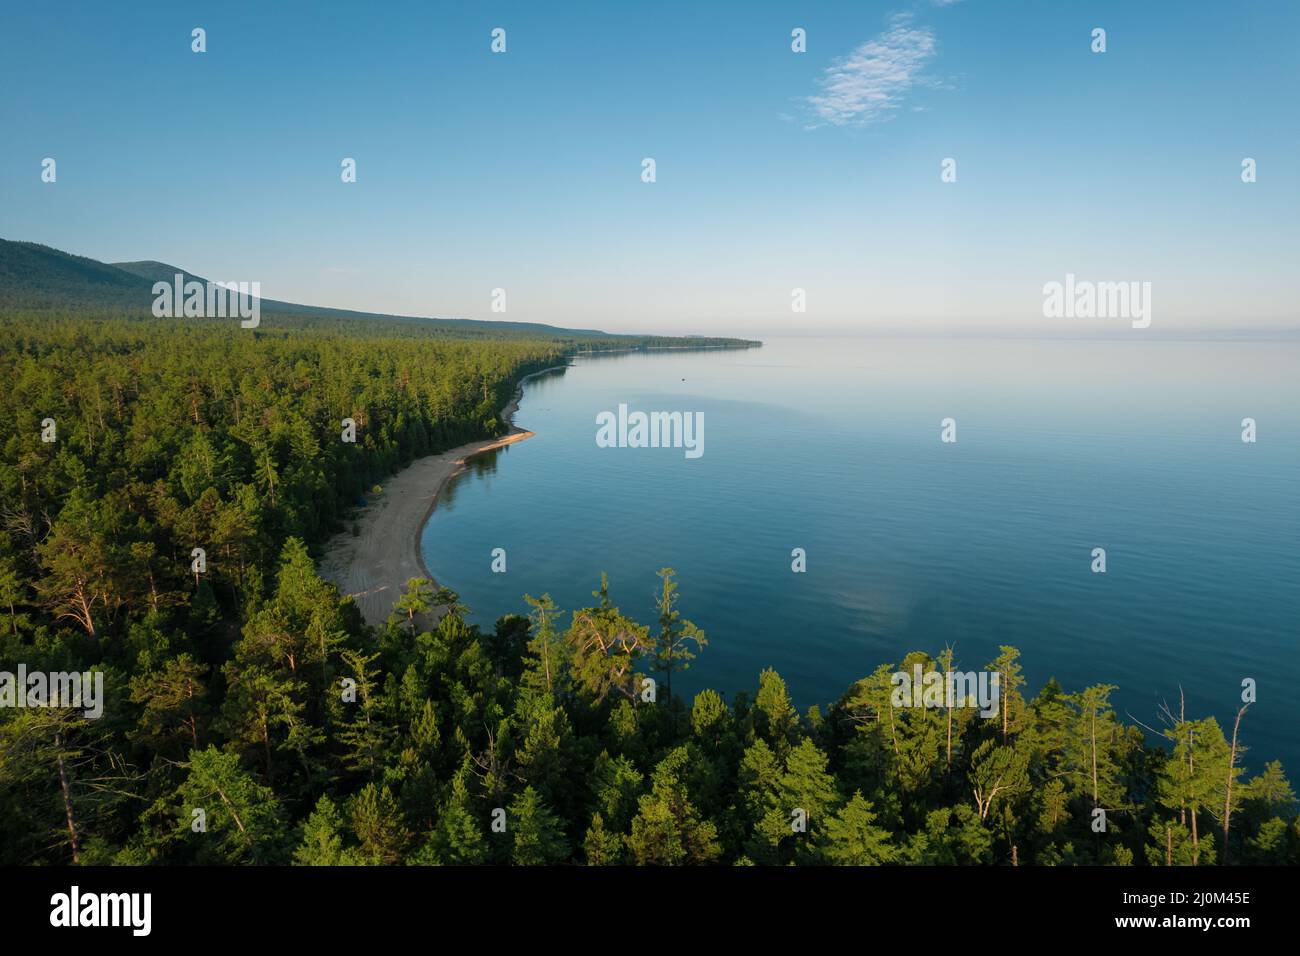 Die Sommerbilder des Baikalsees sind ein Riftsee im Süden Sibiriens, Russland. Baikalsee Sommer Landschaft Blick. Drohnen Stockfoto